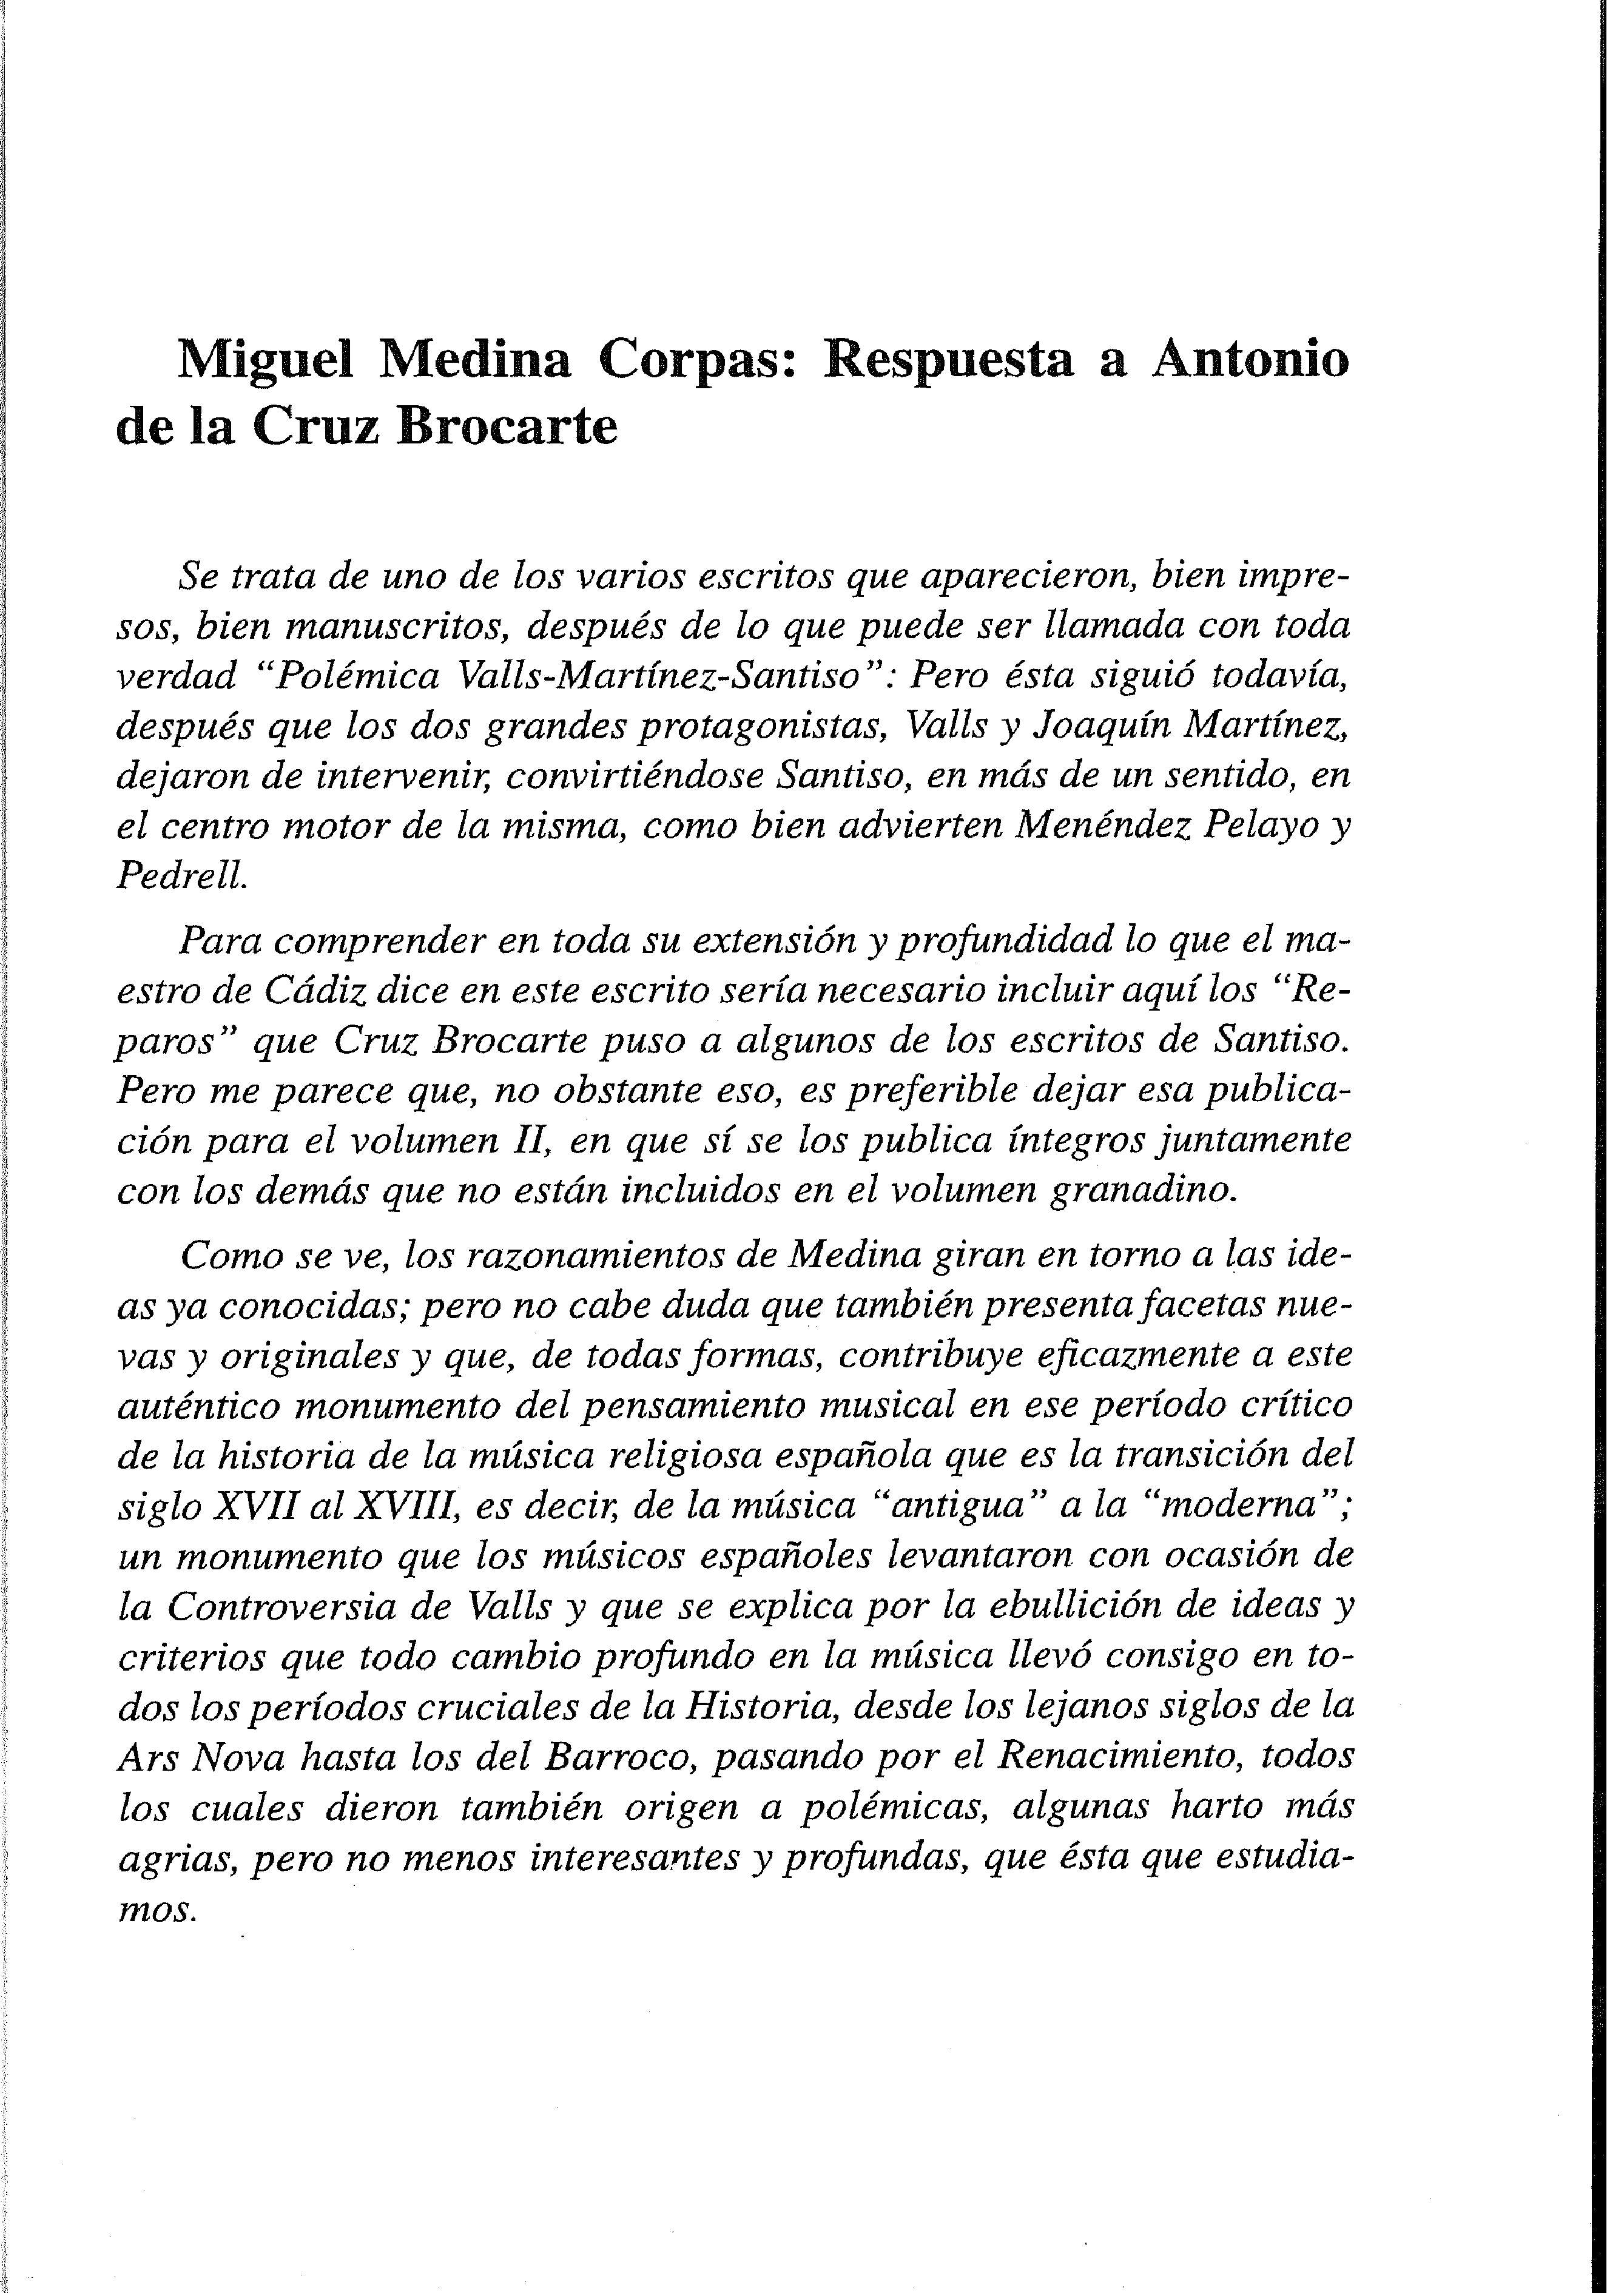 Miguel Medina Corpas: Respuesta a Antonio de la Cruz Brocarte